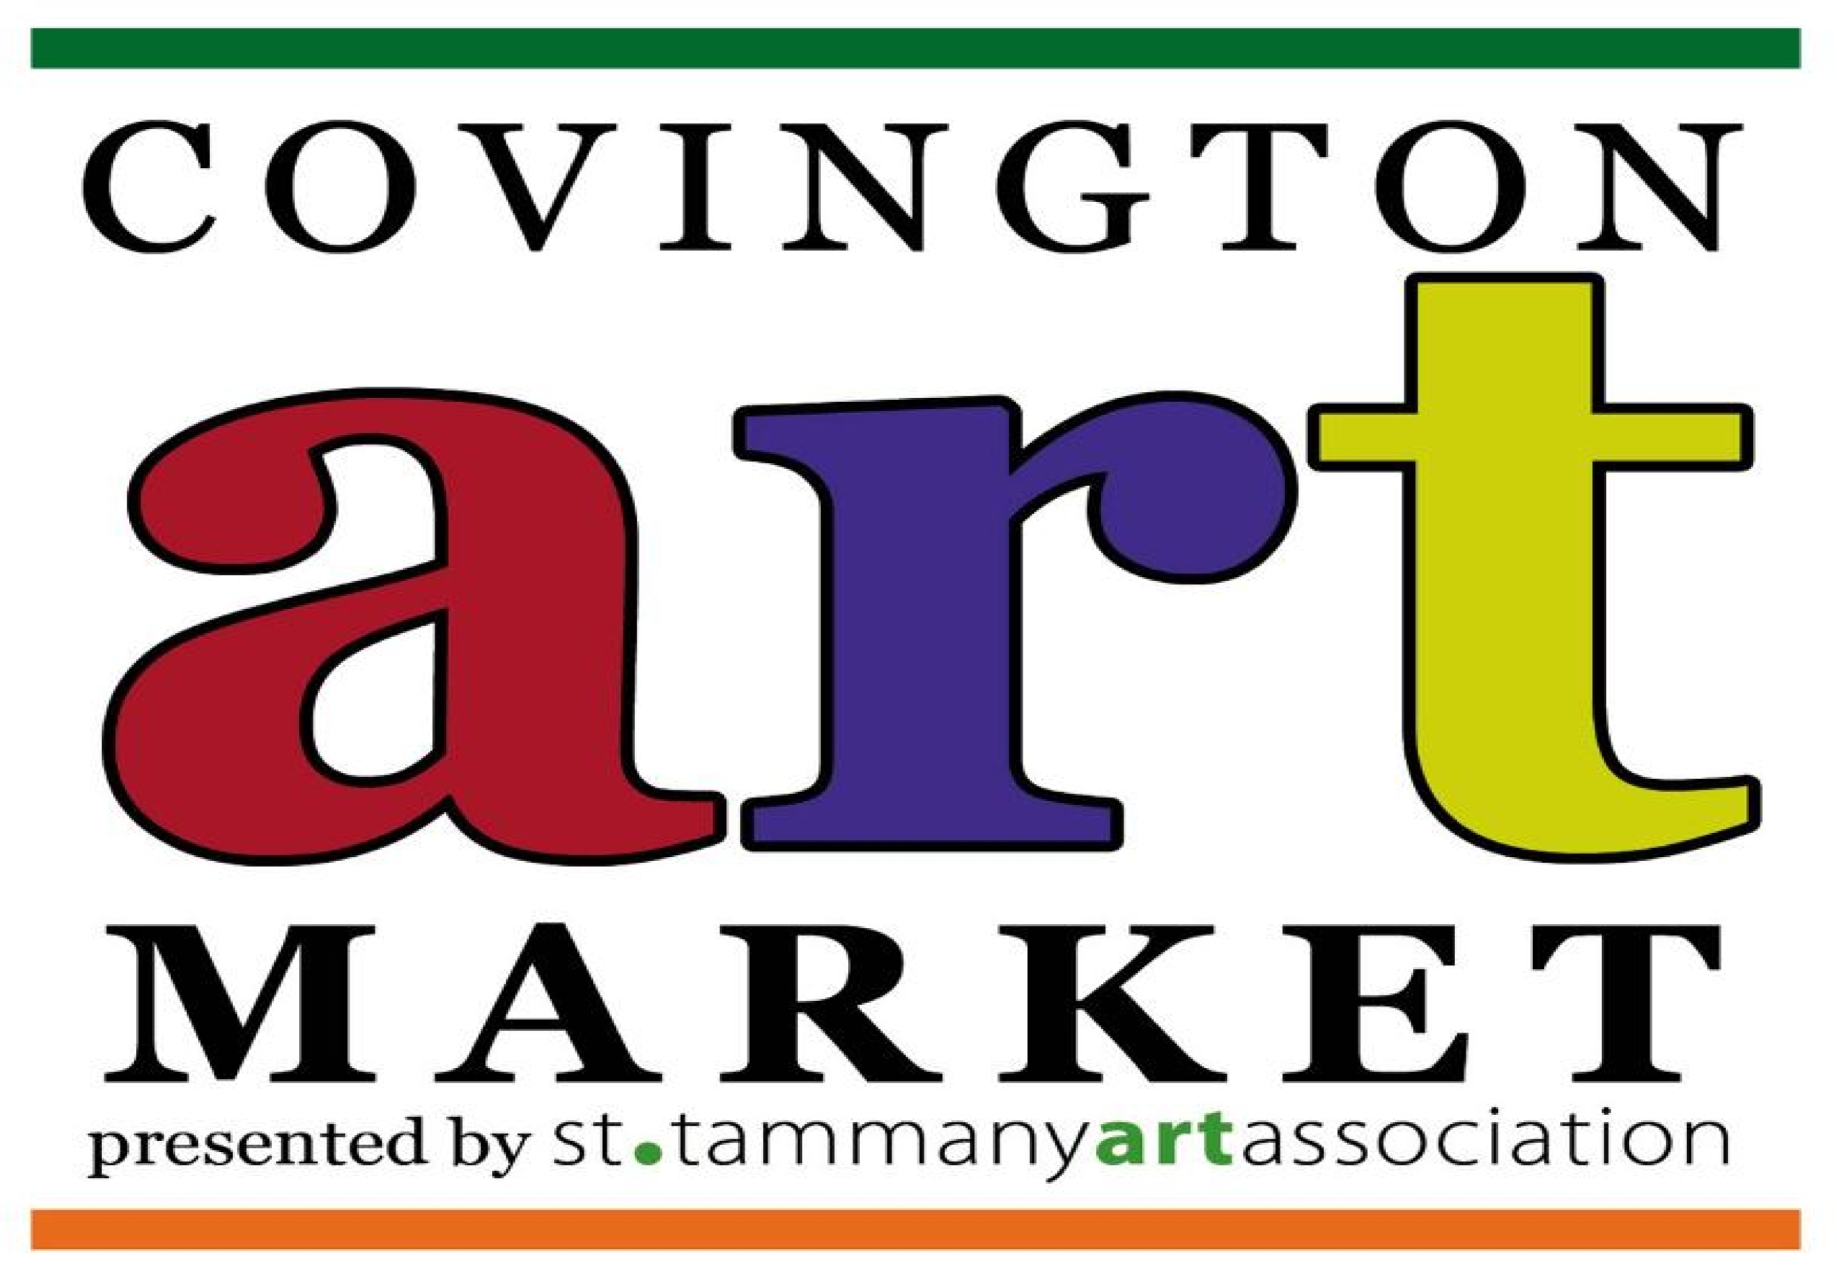 Covington Art Market Takes Place This Saturday at the Covington Trailhead